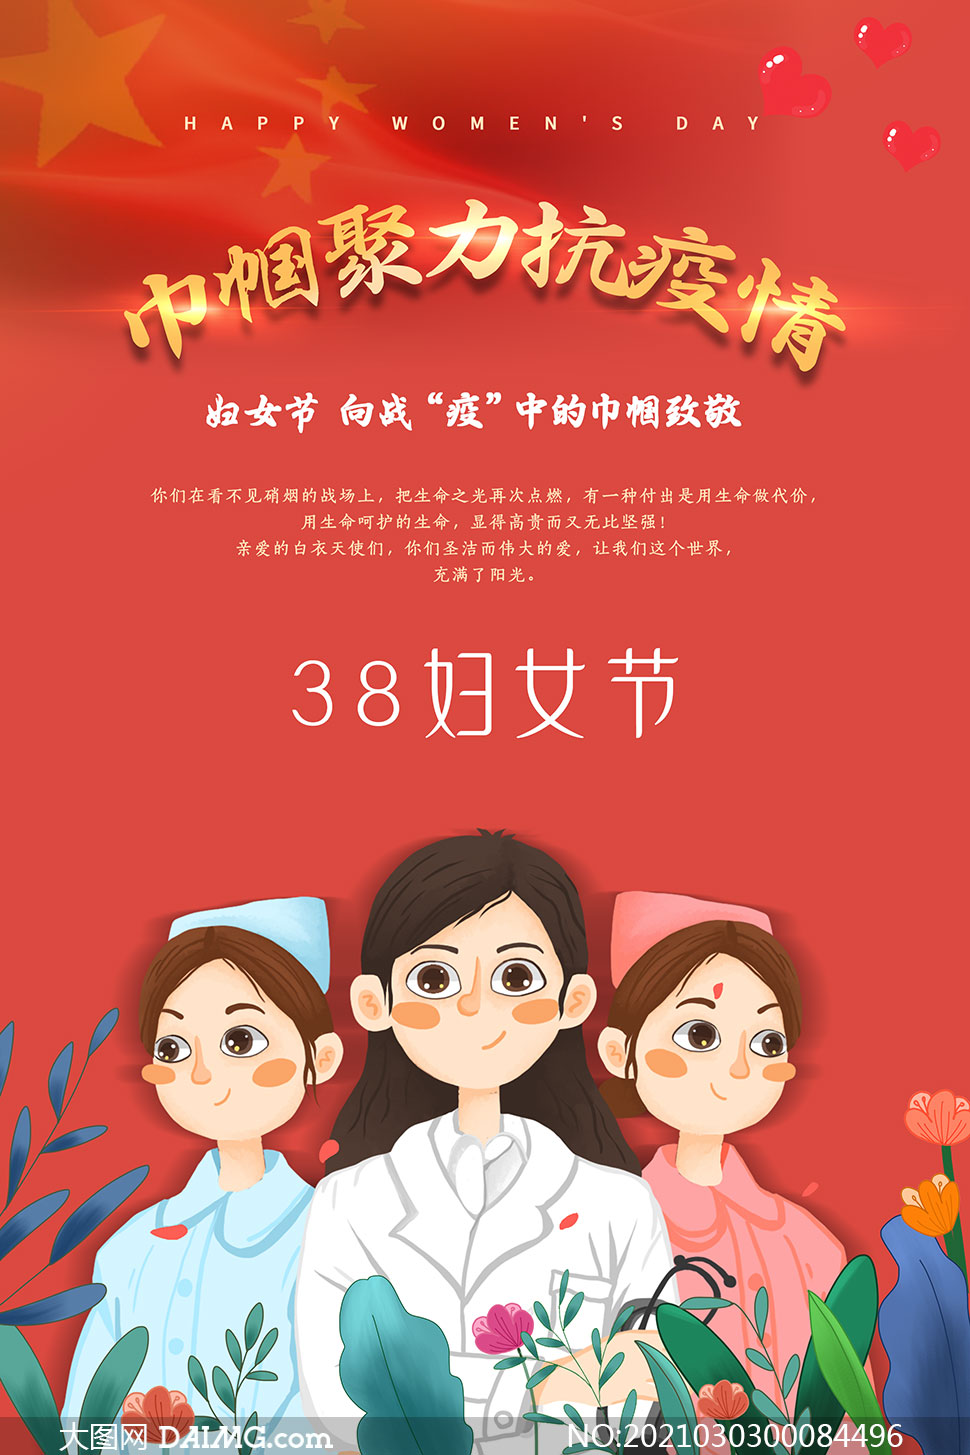 38妇女节致敬巾帼英雄主题海报psd素材